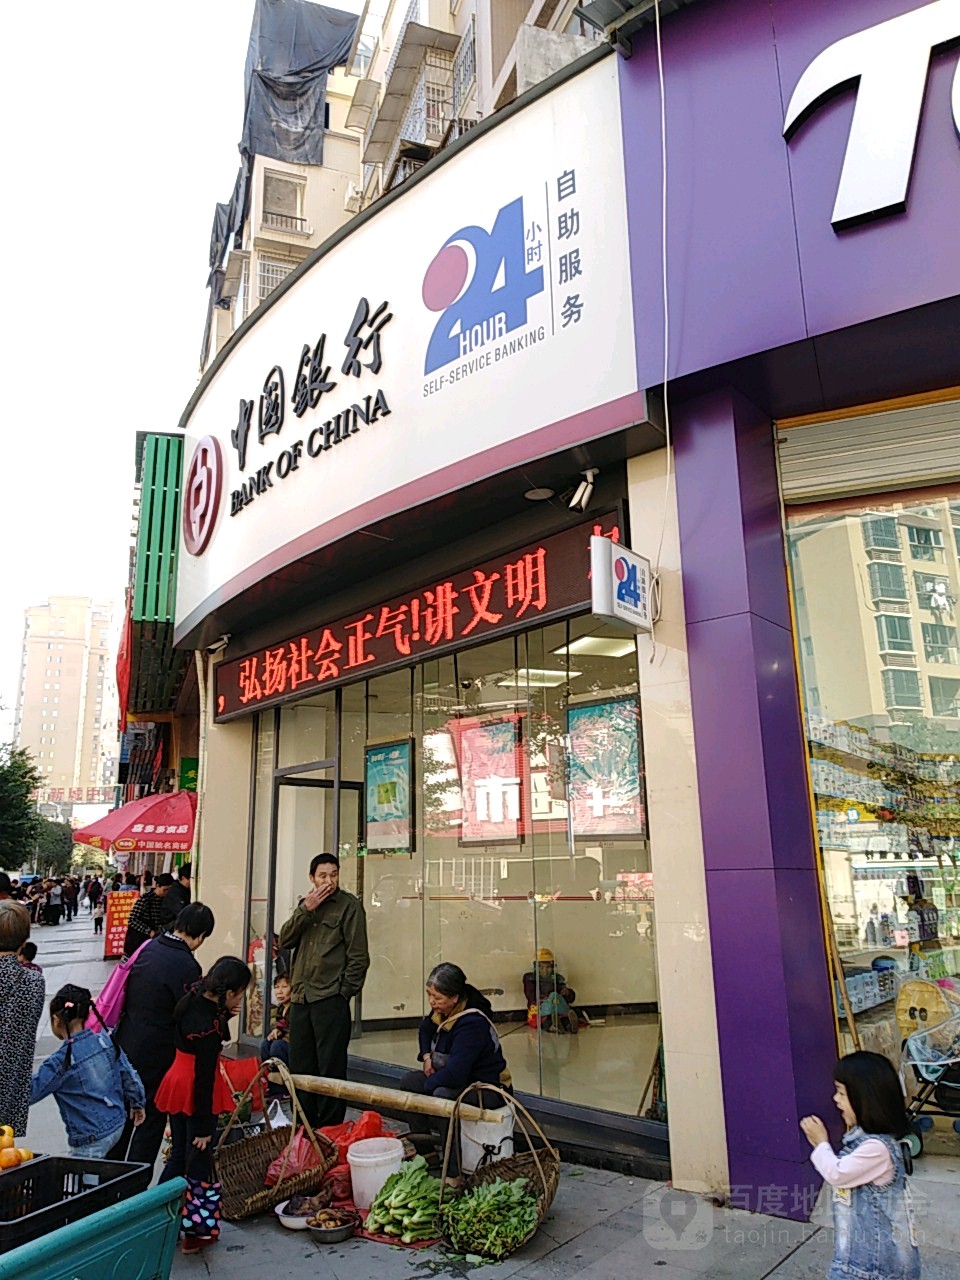 中國銀行24小時自助銀行服務(龍成購物廣場西)